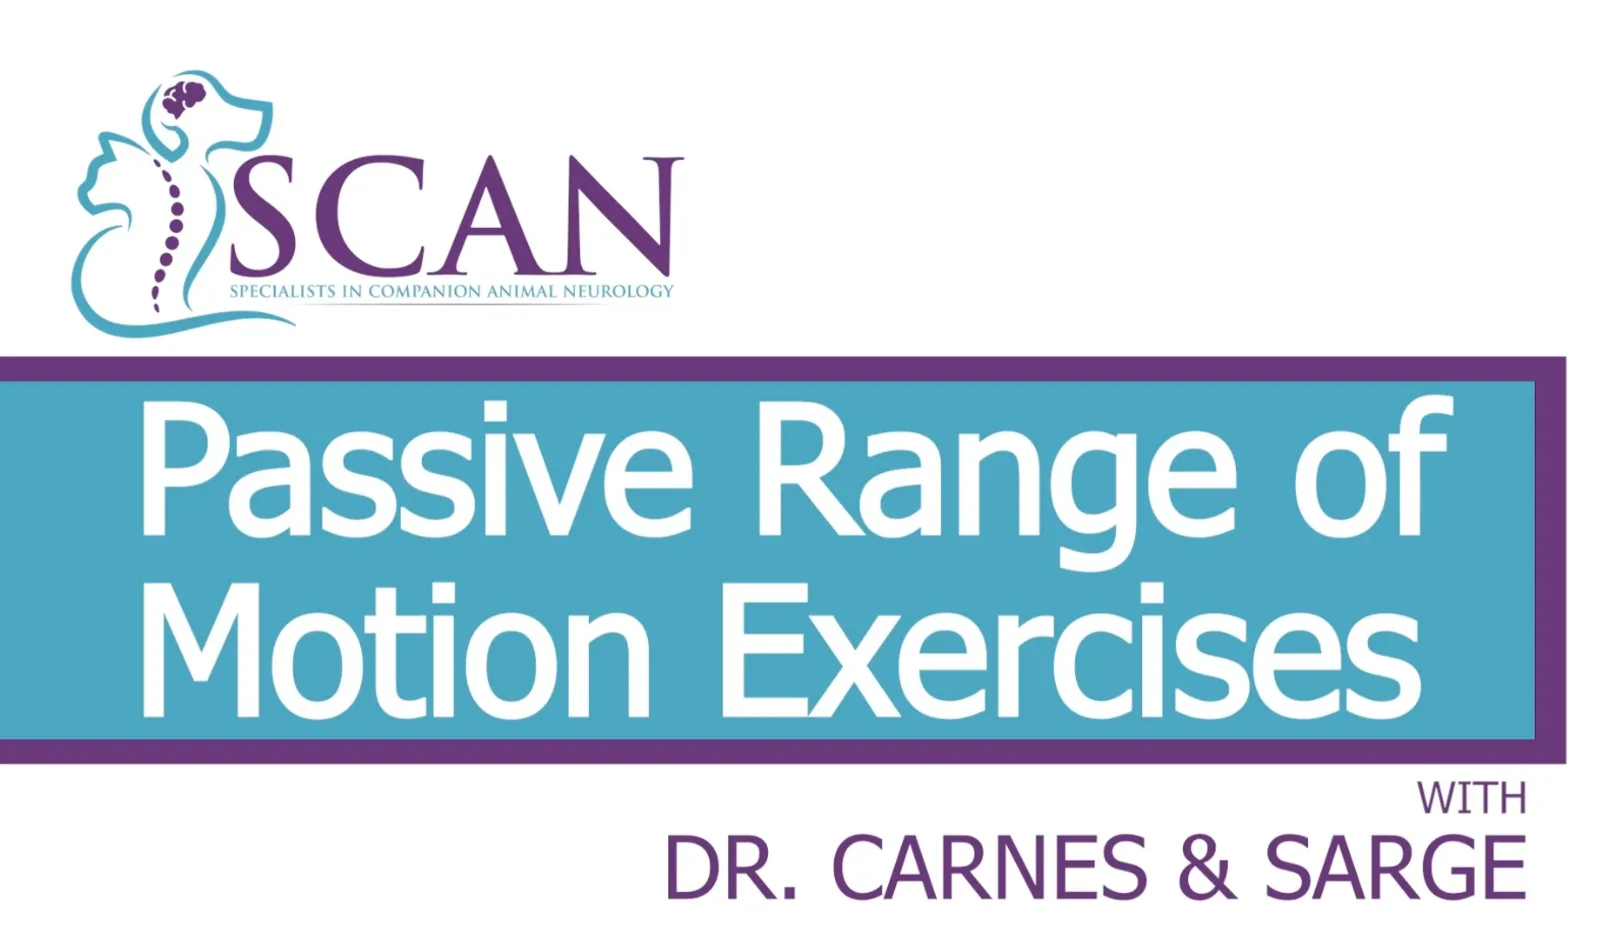 Dr. Carnes explains Passive Range of Motion exercises